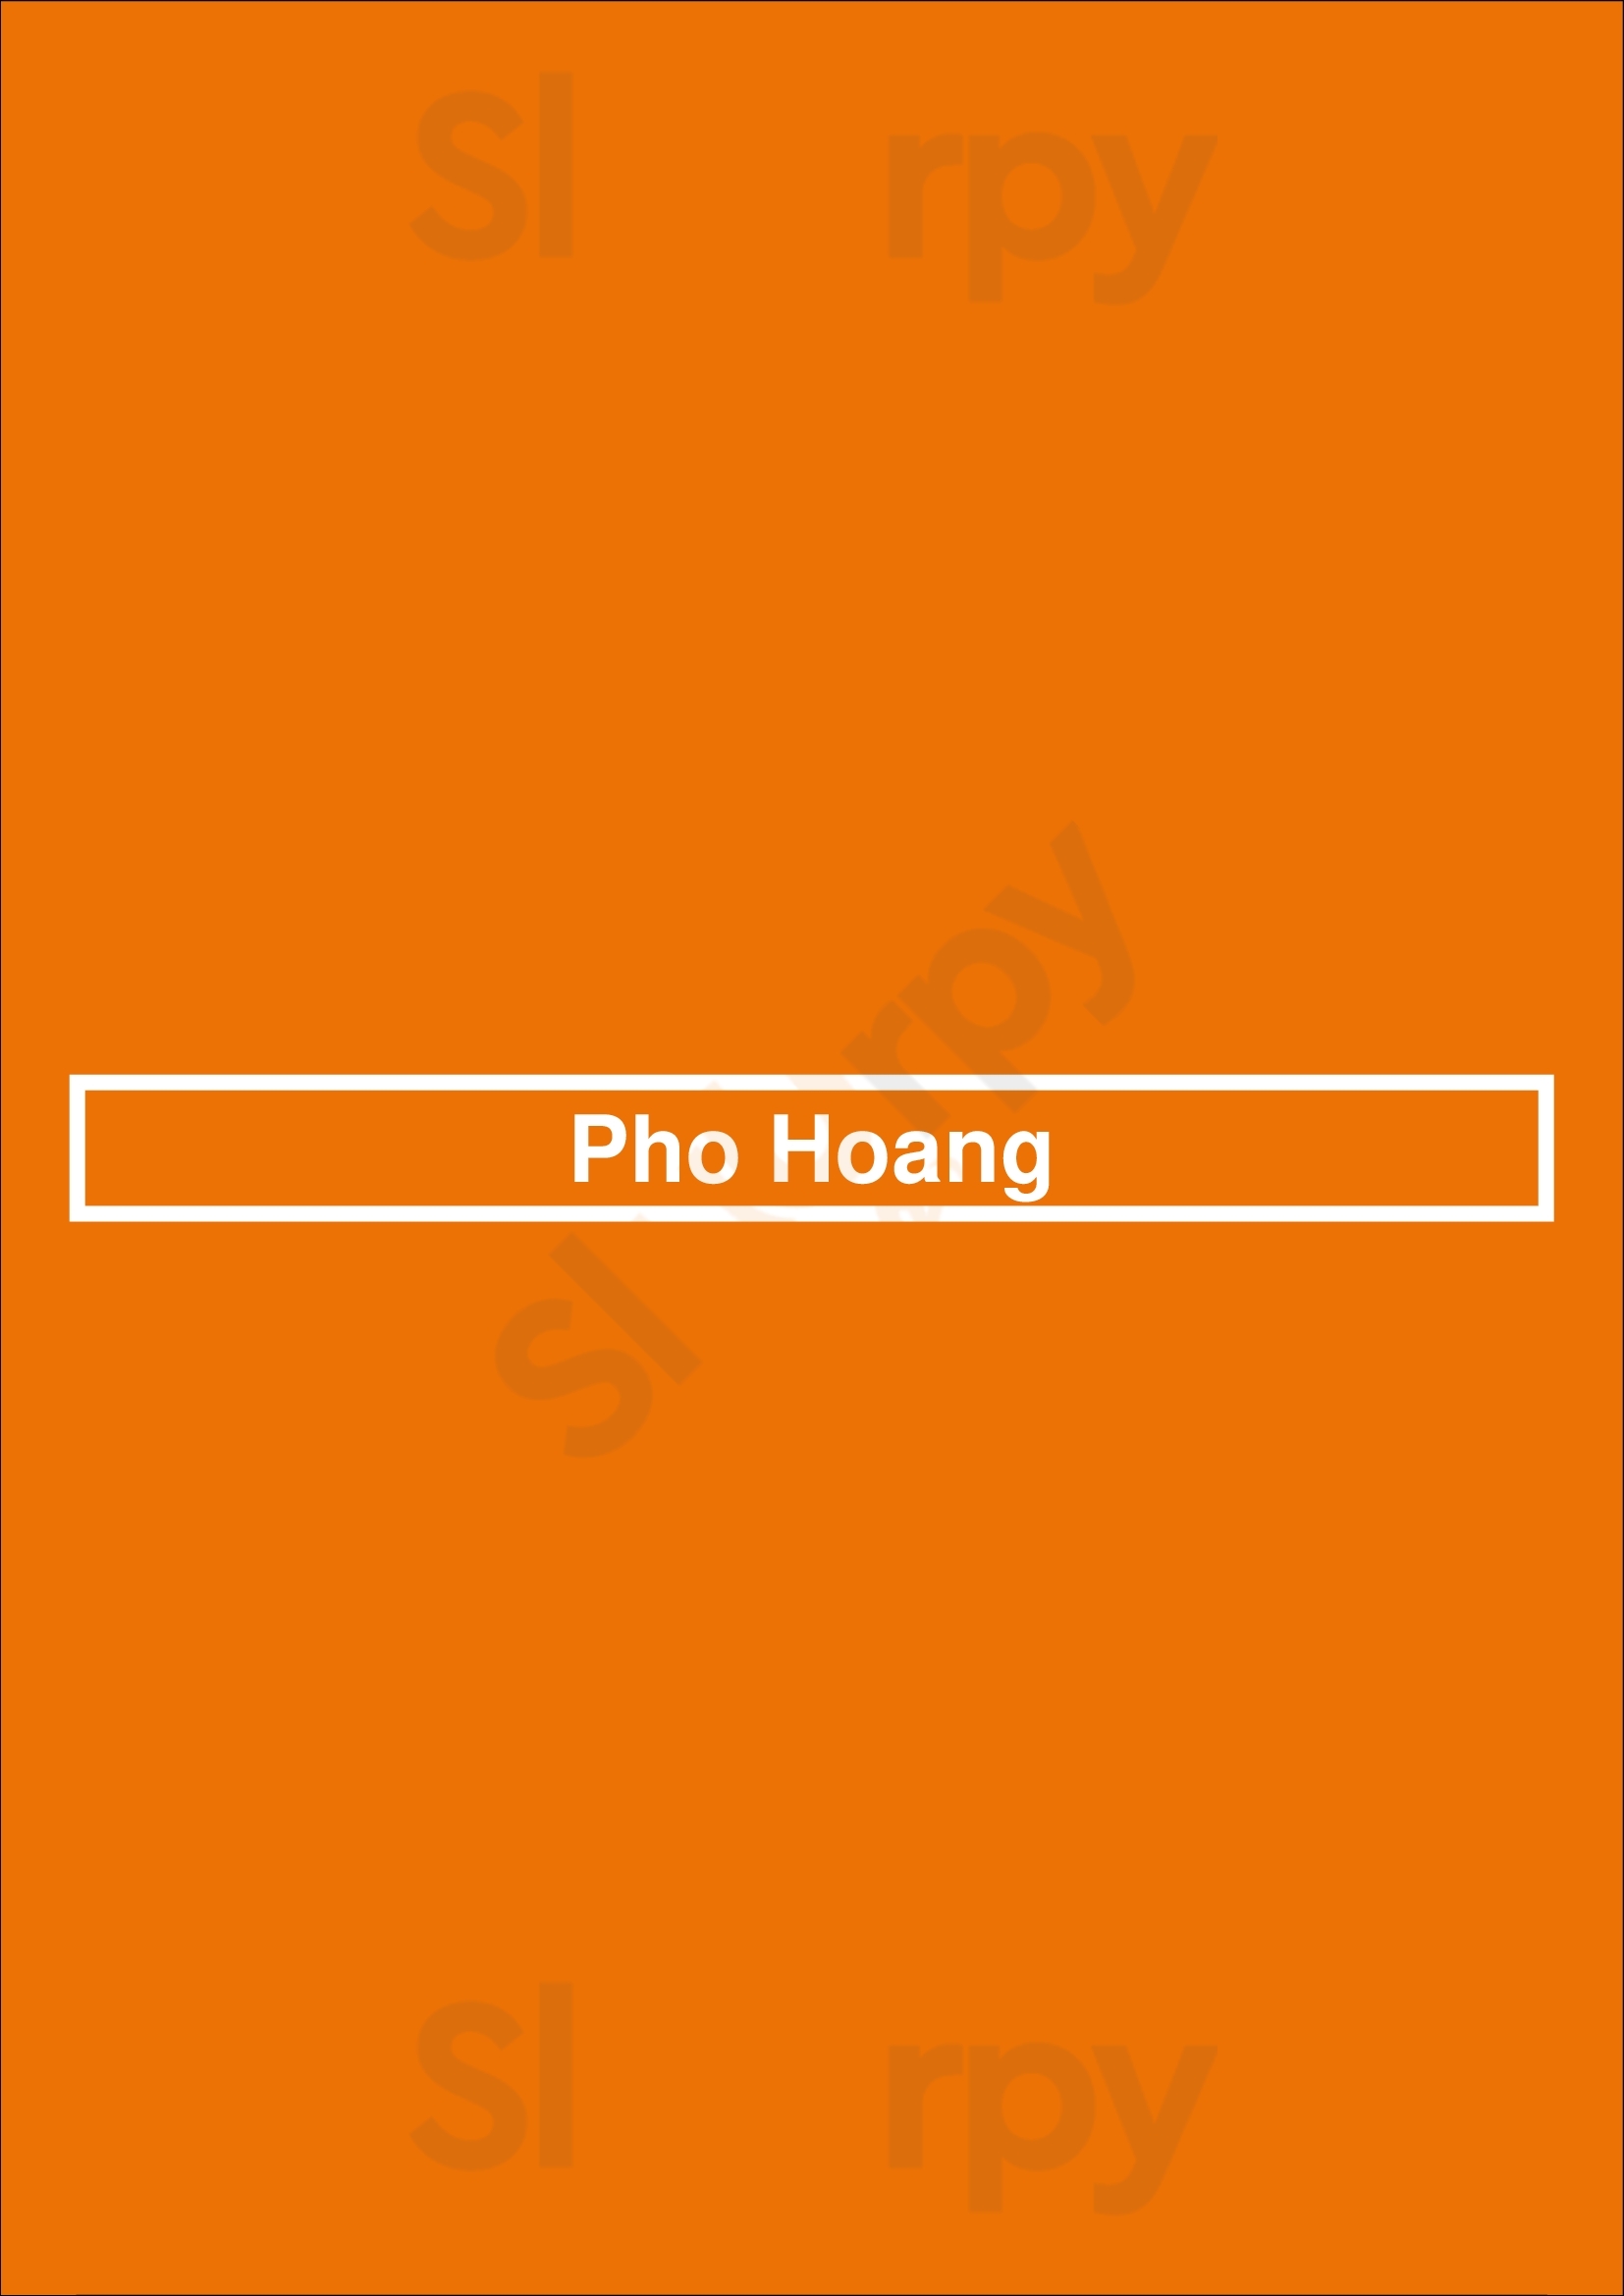 Pho Hoang Winnipeg Menu - 1